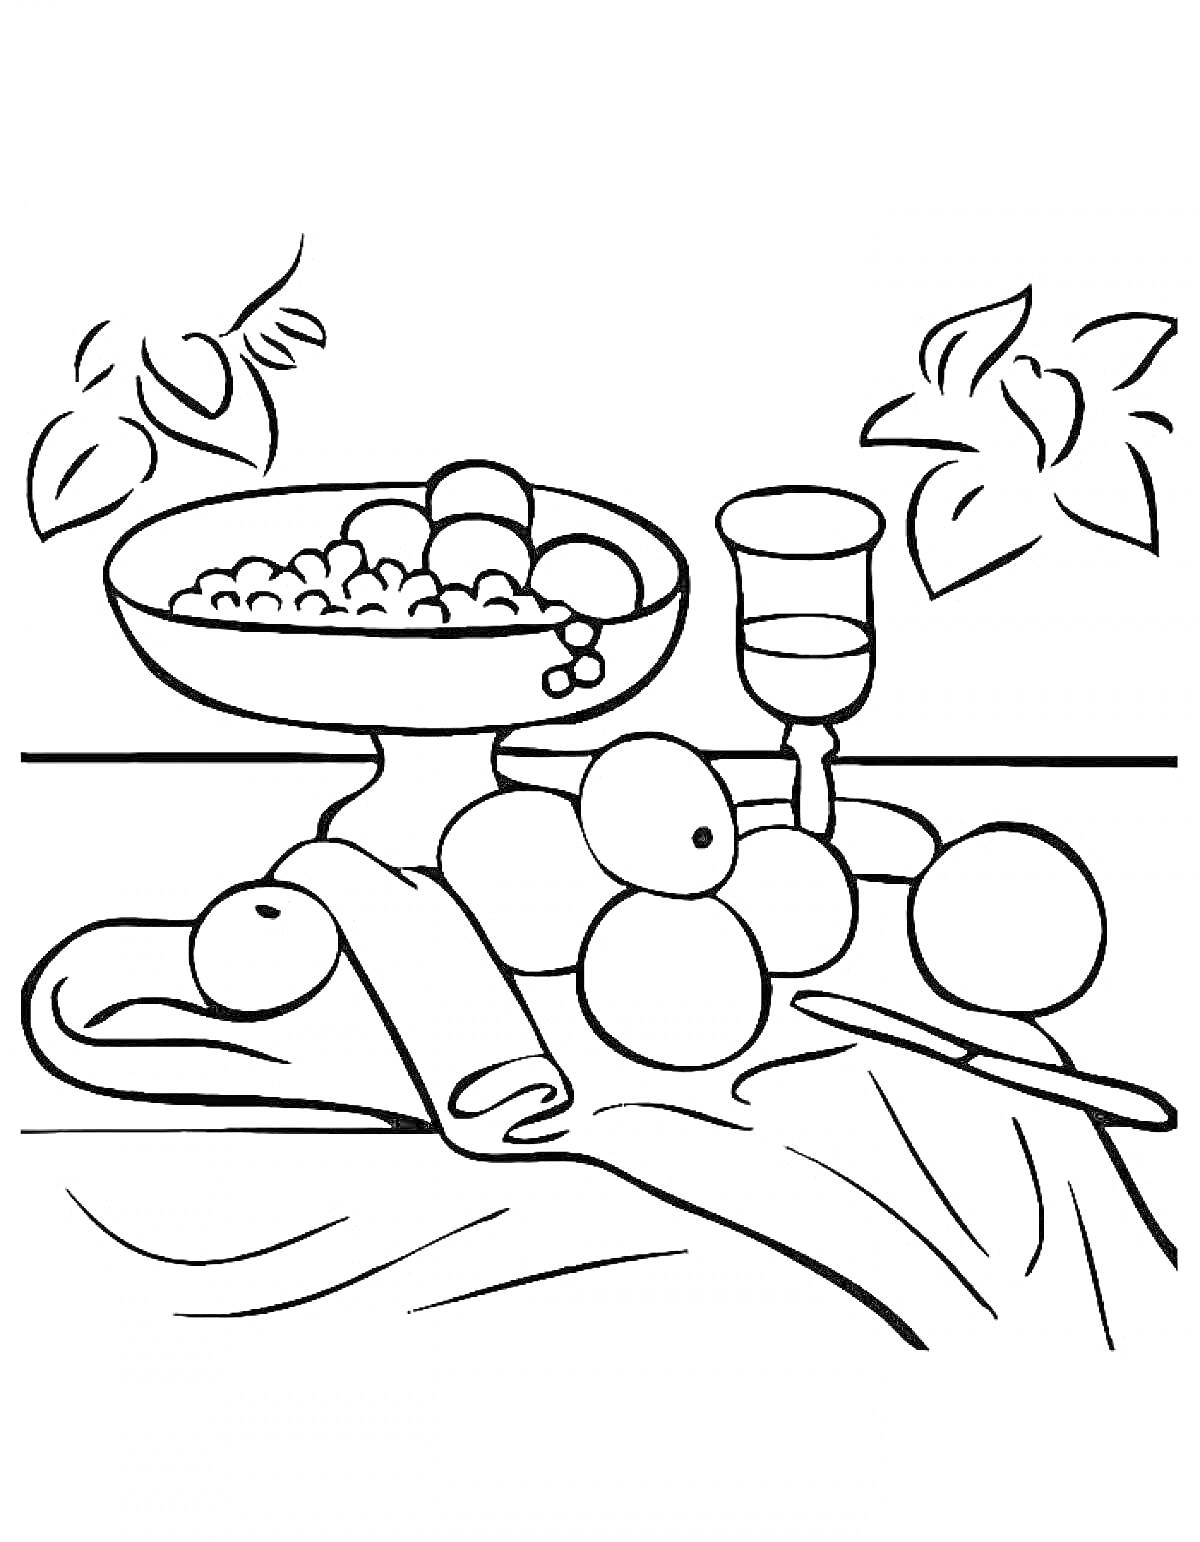 Раскраска Натюрморт с фруктами, бокалом и салфеткой на столе